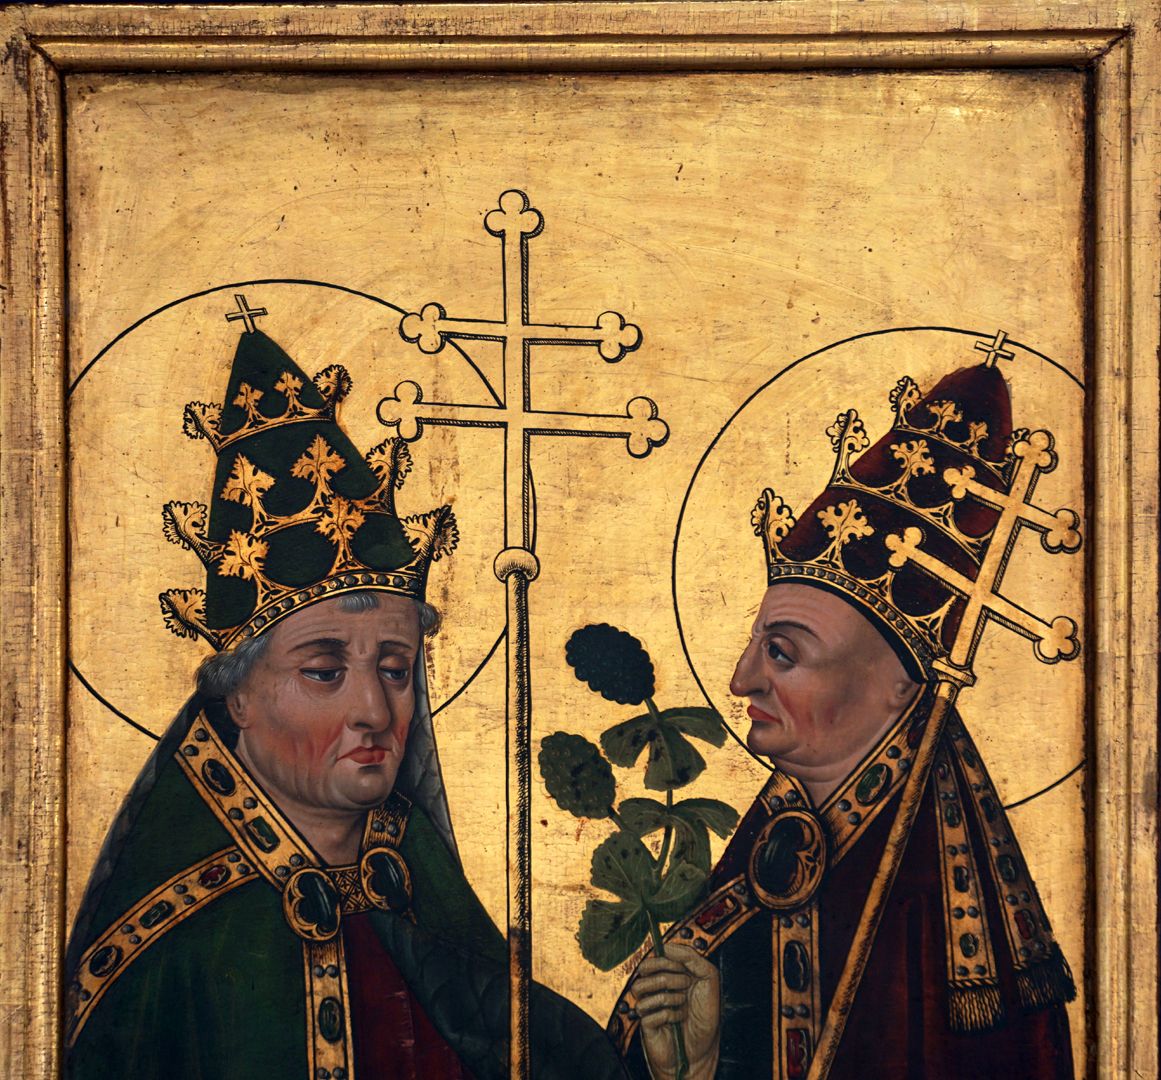 Sebastian-Altar linker Schreinflügel, Papst Sixtus und Bischof Urban (Attribut hier eine Hopfendolde, regulär sind es Weintrauben)